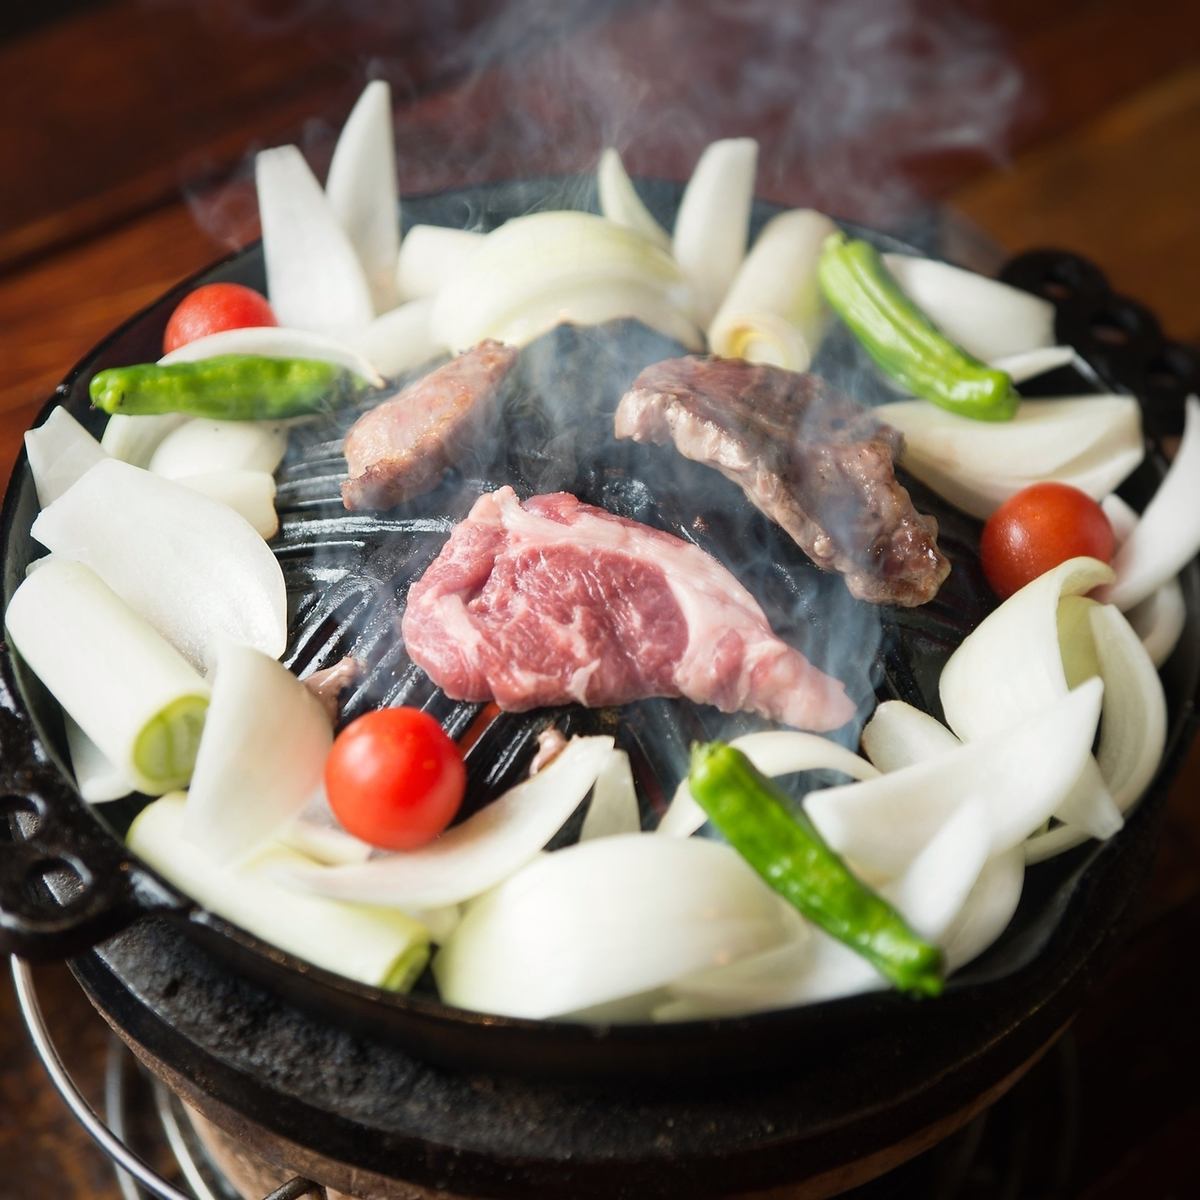 請享用直接來自北海道的成吉思汗和新鮮羊肉。